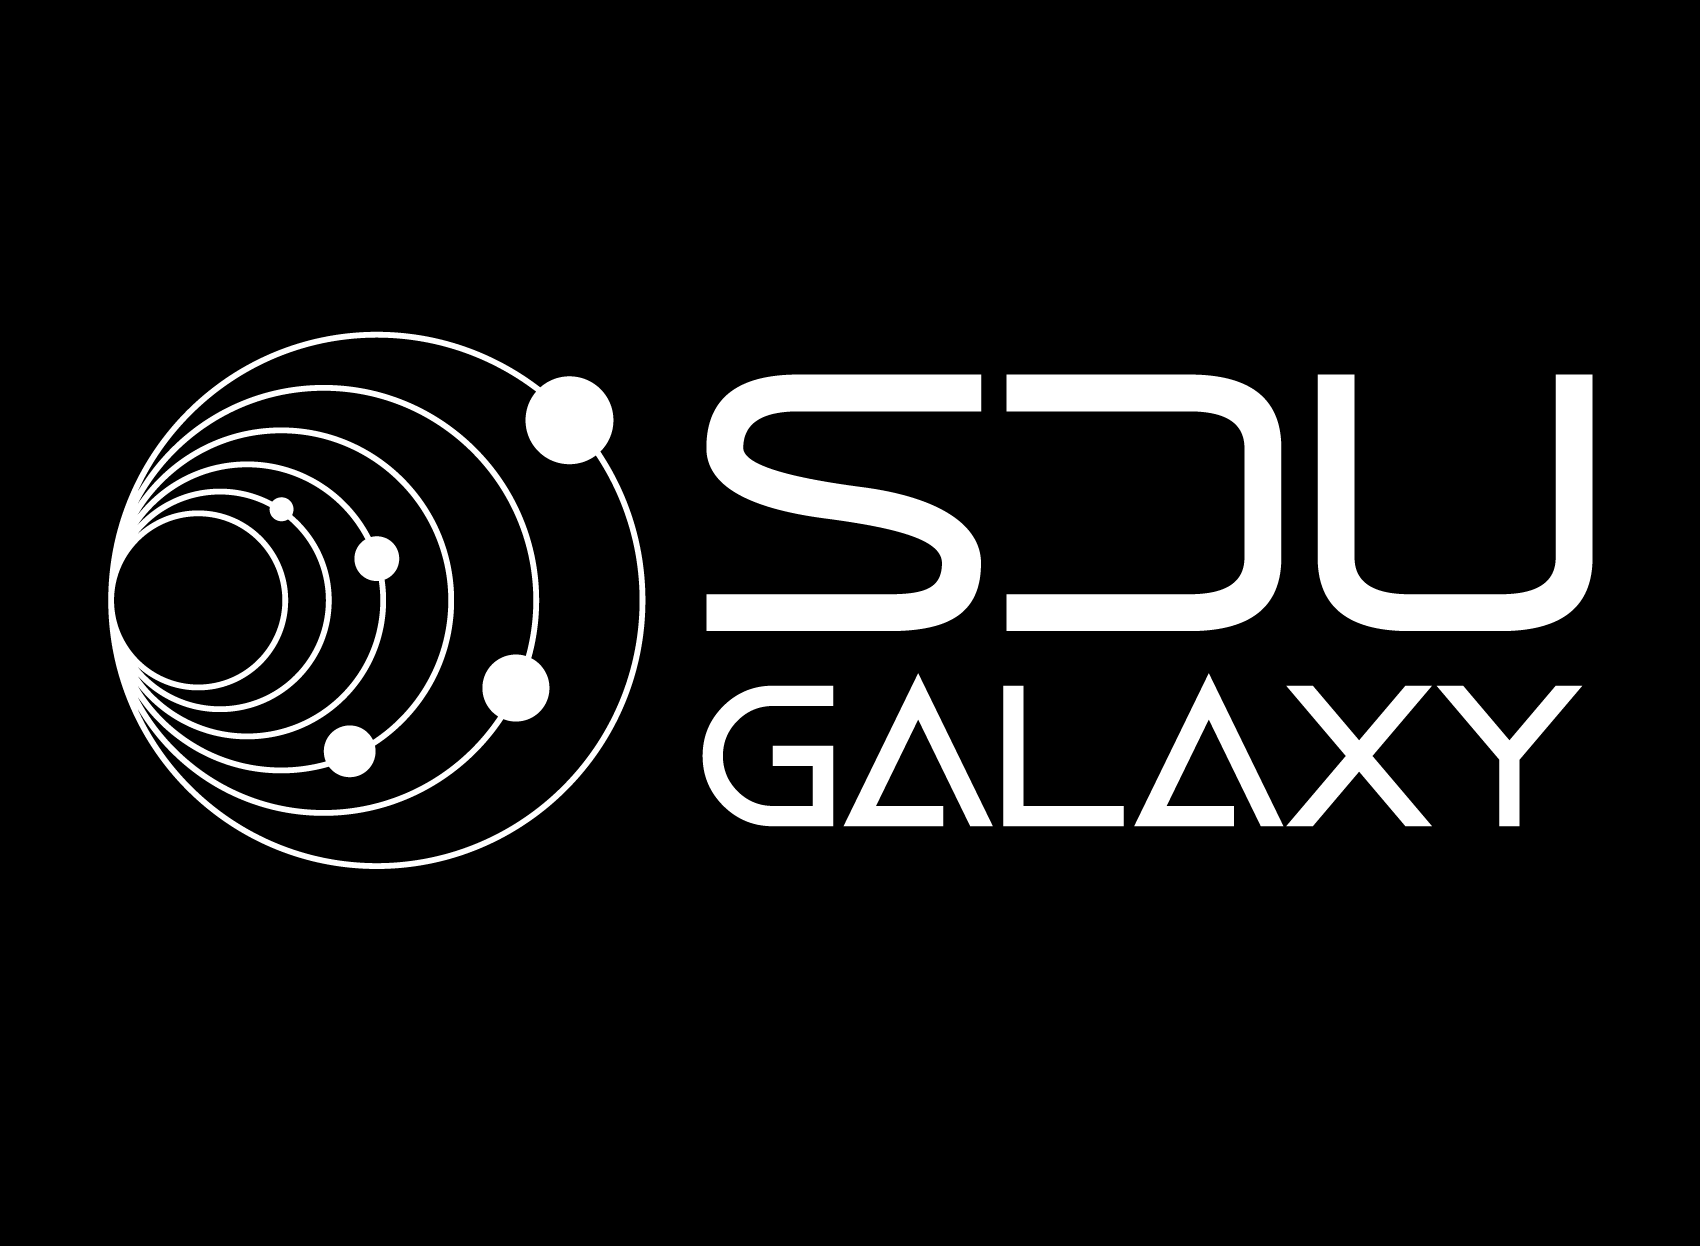 SDU Galaxy logo